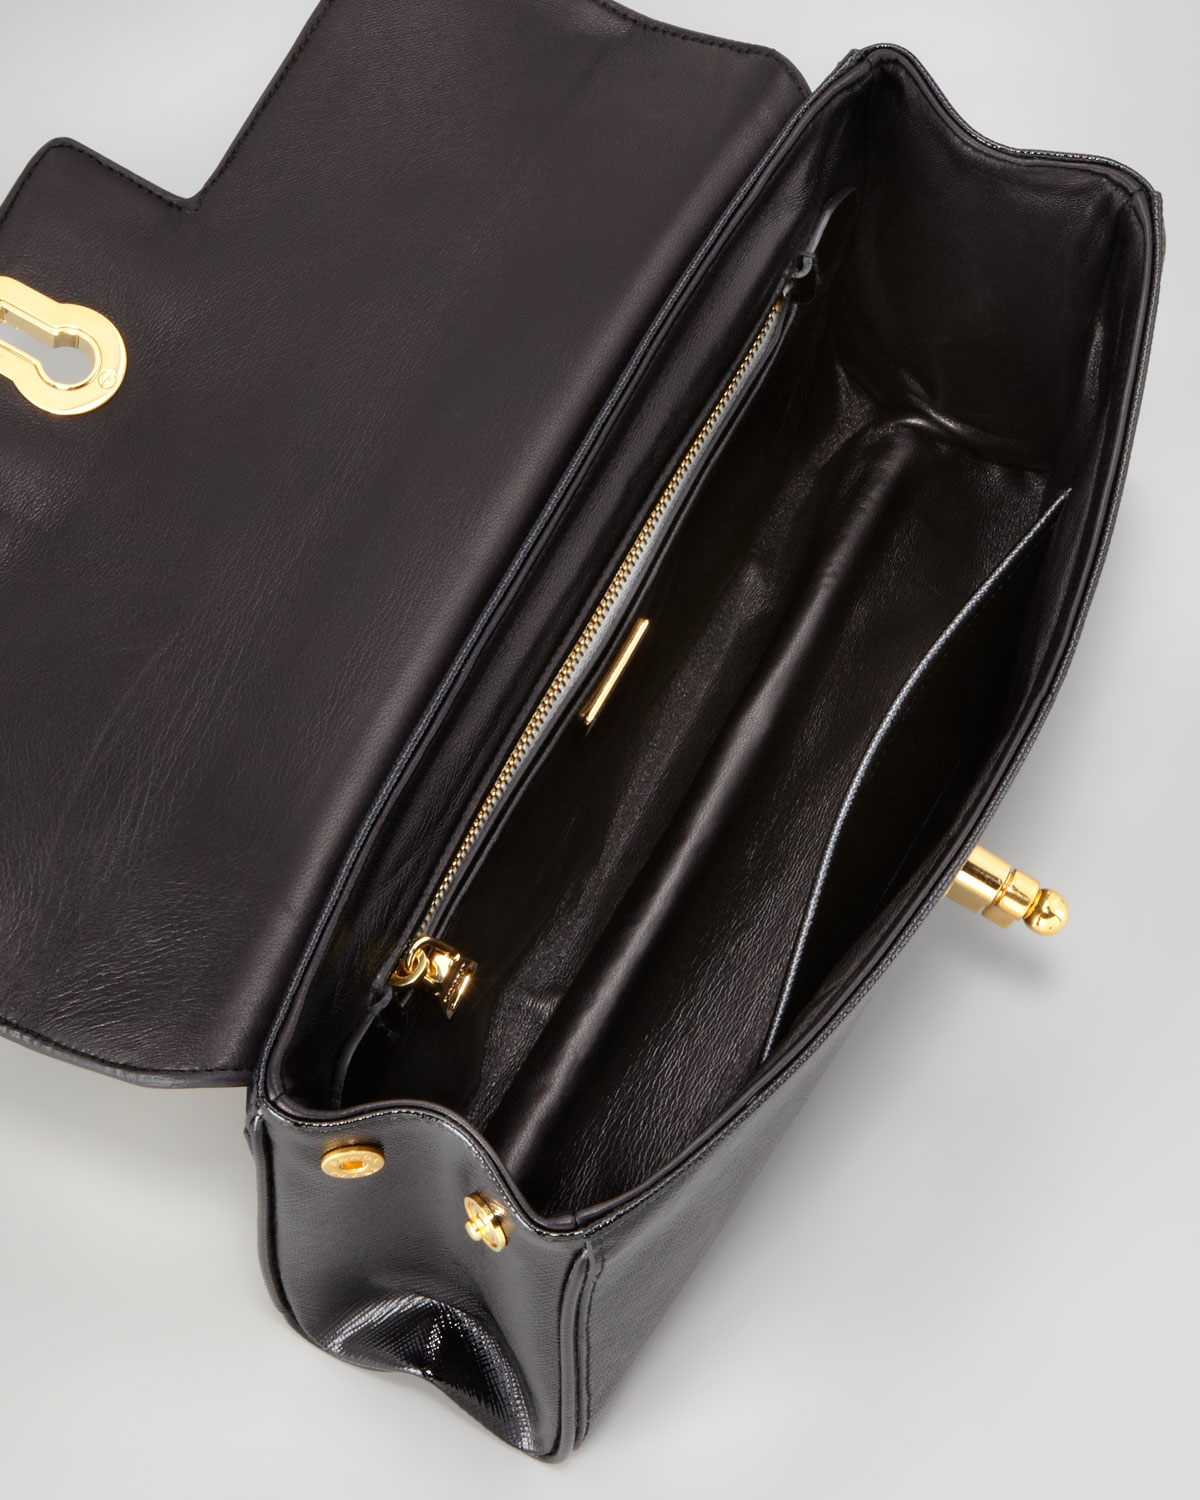 Prada Saffiano Vernice Chain Shoulder Bag in White (nero/bianco ...